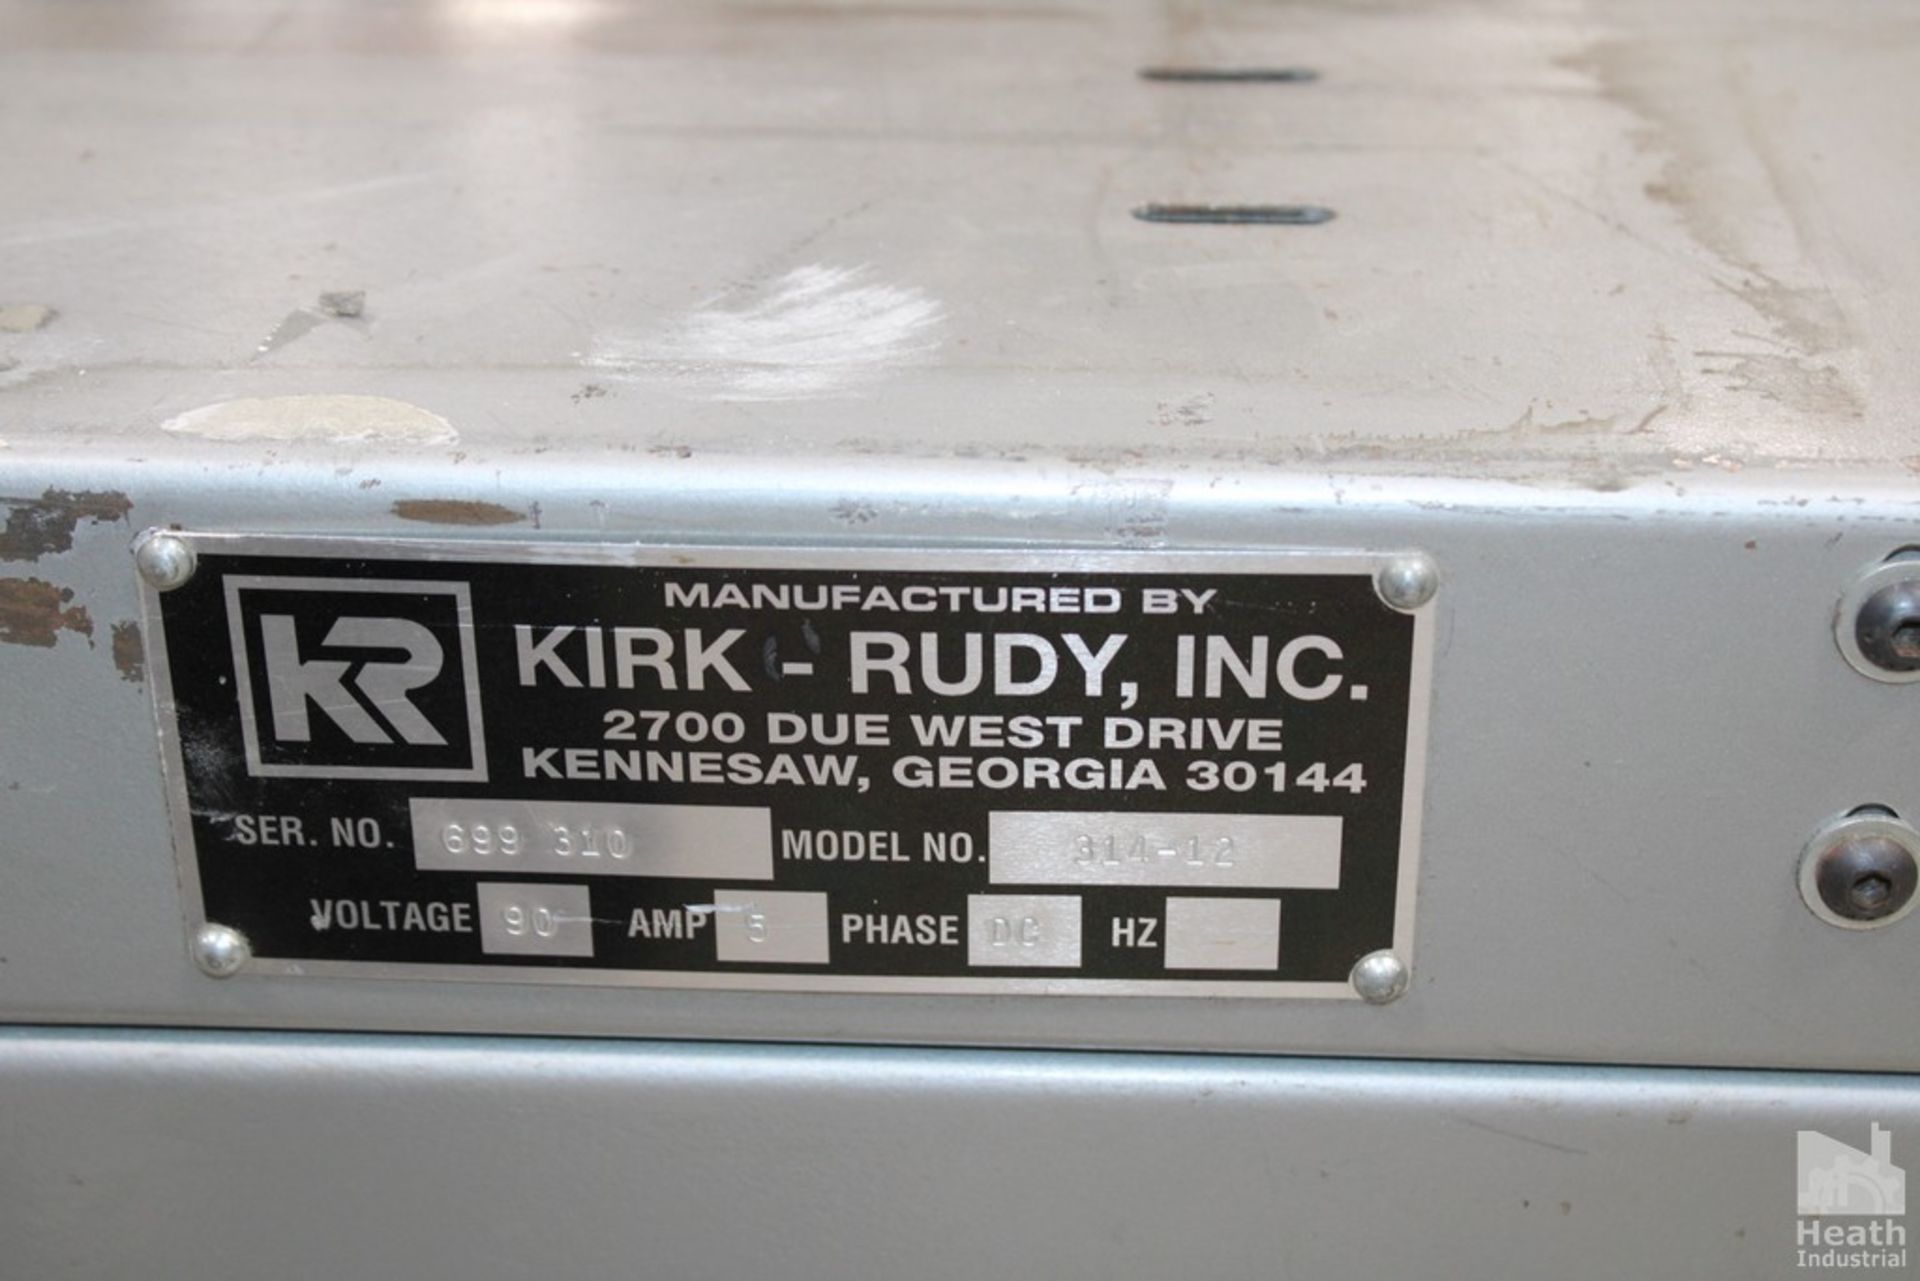 KIRK RUDY MODEL 314-12 S/N 699310 PORTABLE BELT CONVEYOR - Image 4 of 4